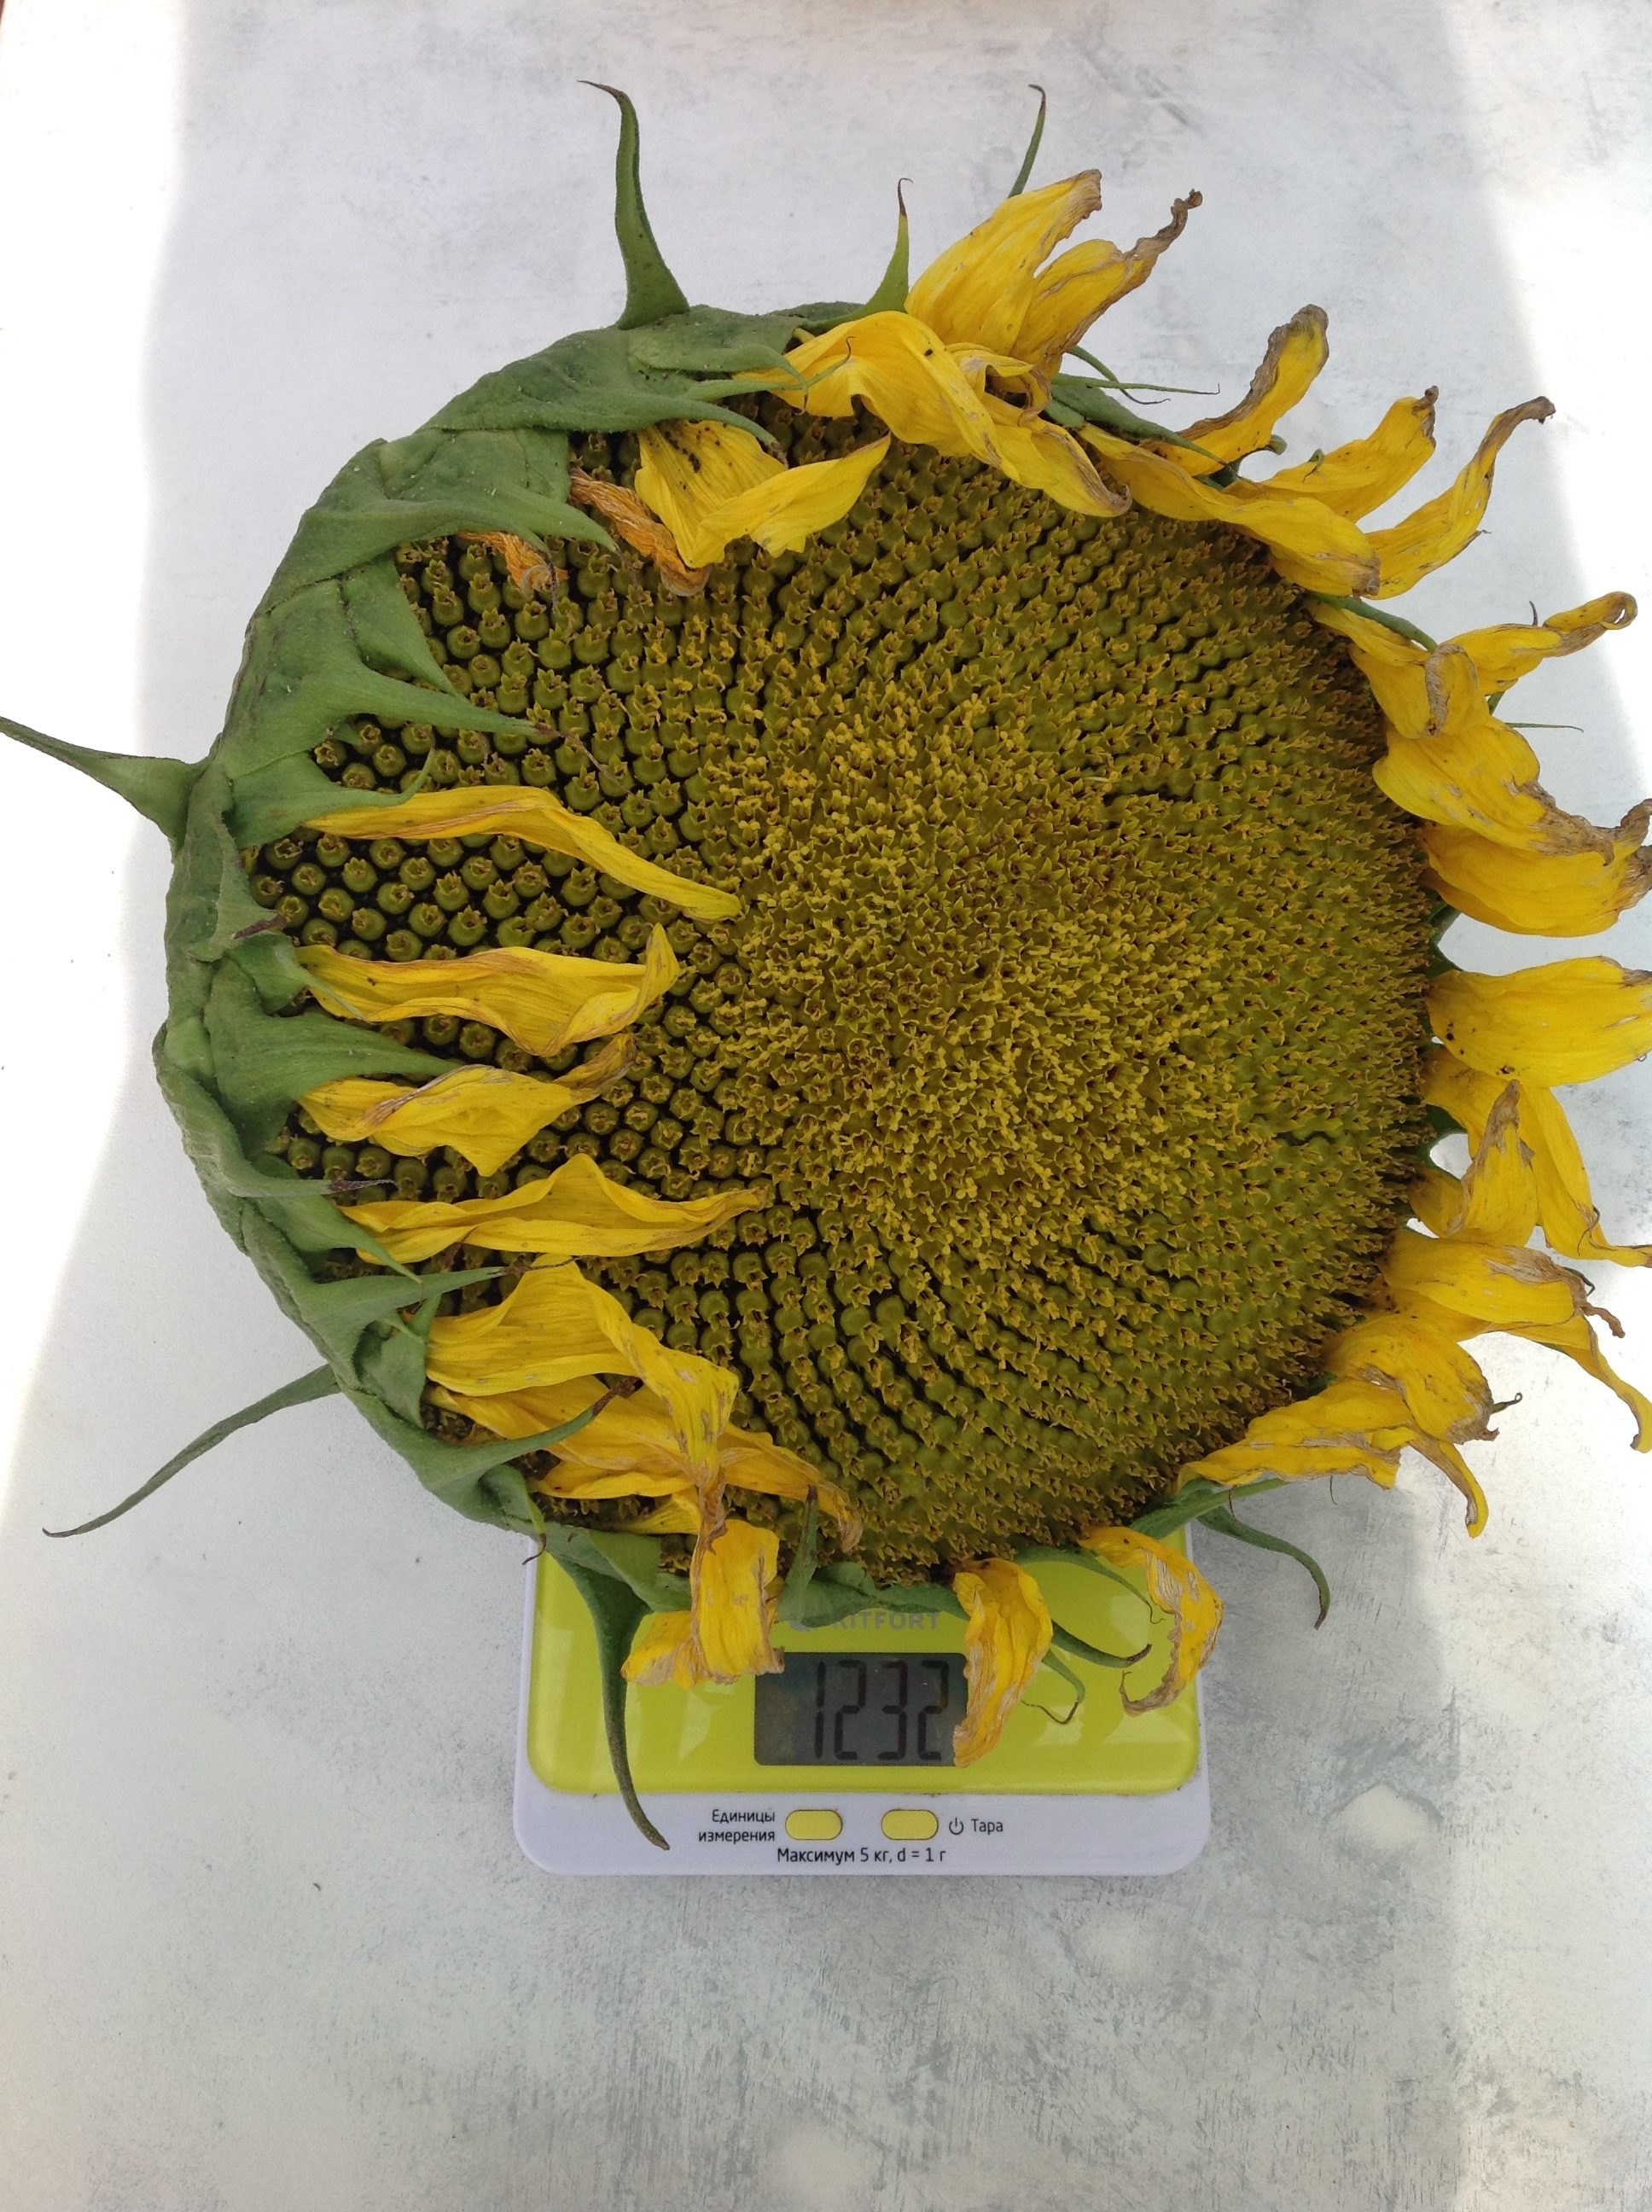 Wie viel wiegt eine durchschnittliche Sonnenblume?